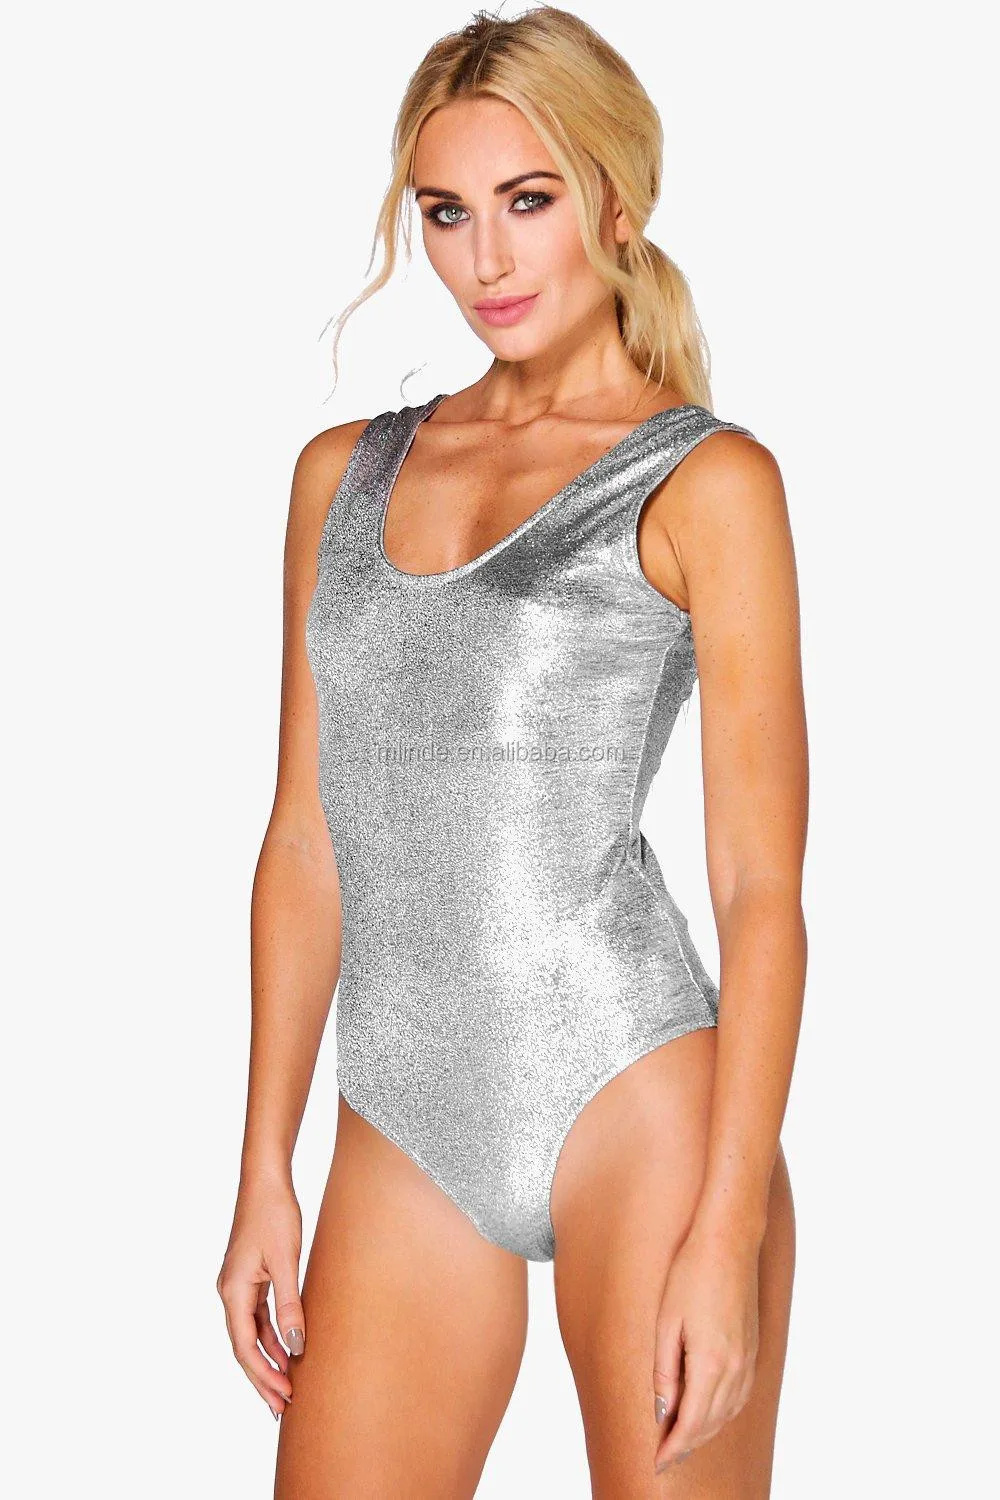 Metallic Bodysuit Adult Sex Leotards Bodysuits For Women Buy Metallic 